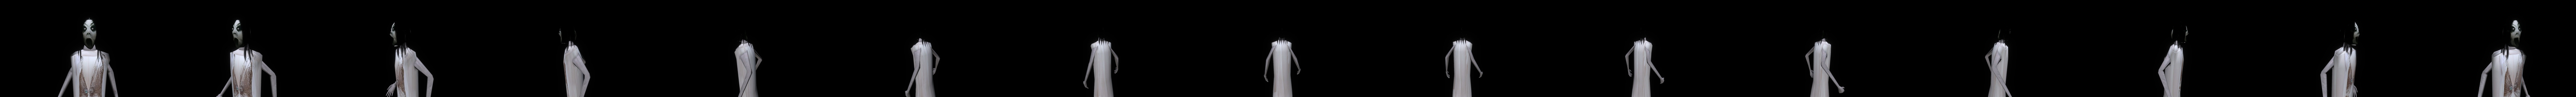 Slendrina (House Of Slendrina) - Download Free 3D model by DVUnit (@DVUnit)  [4c1f82e]